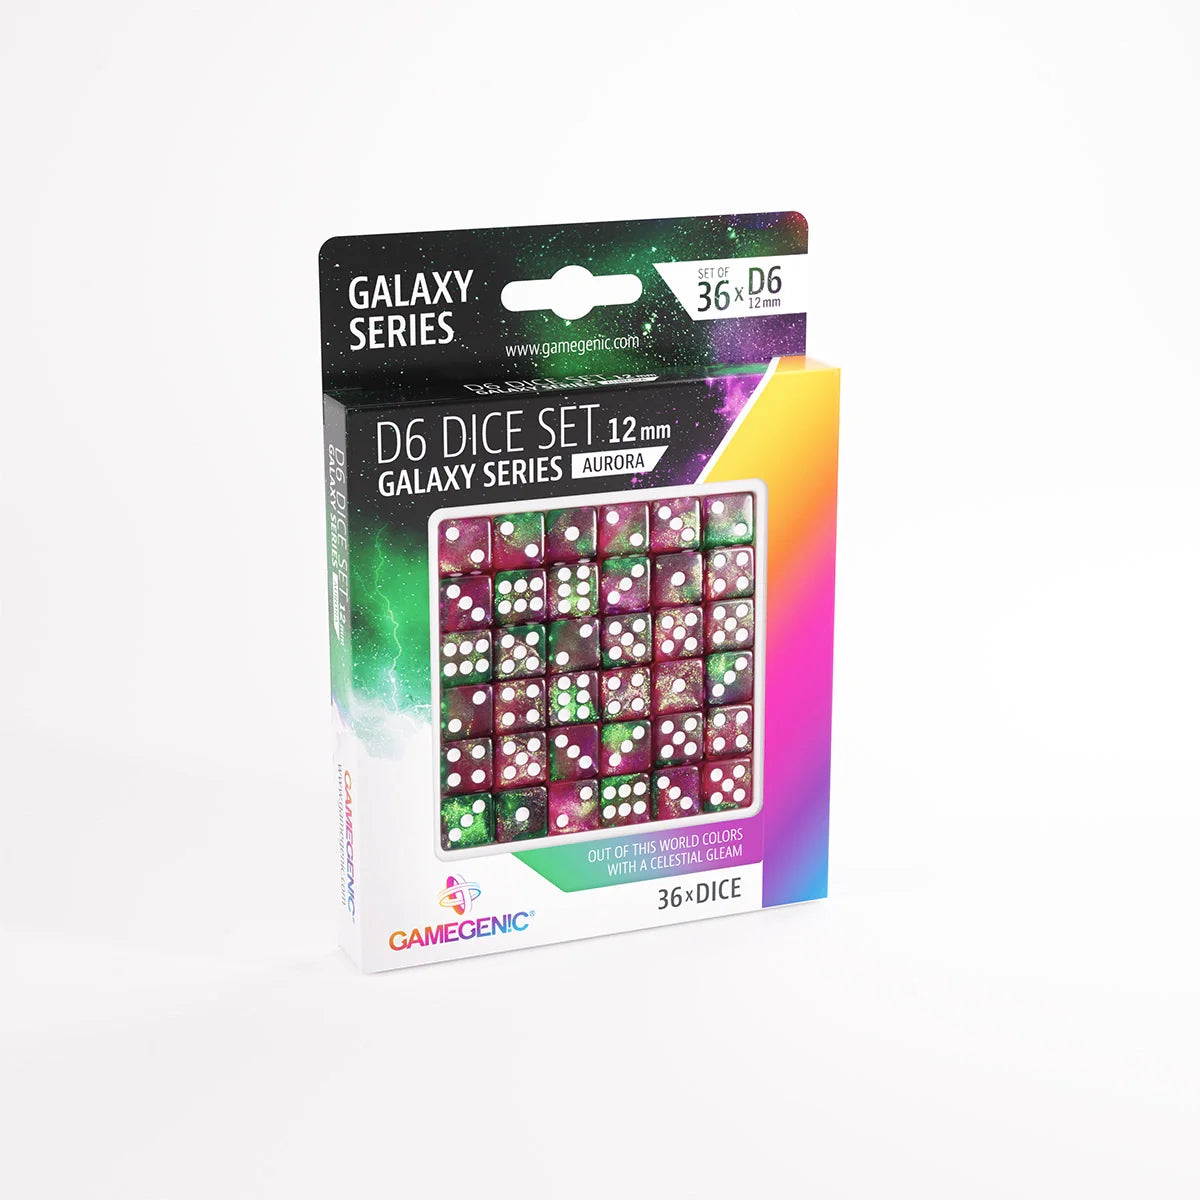 Gamegenic D6 Dice Set - Galaxy Series - Aurora (36x 12mm D6)